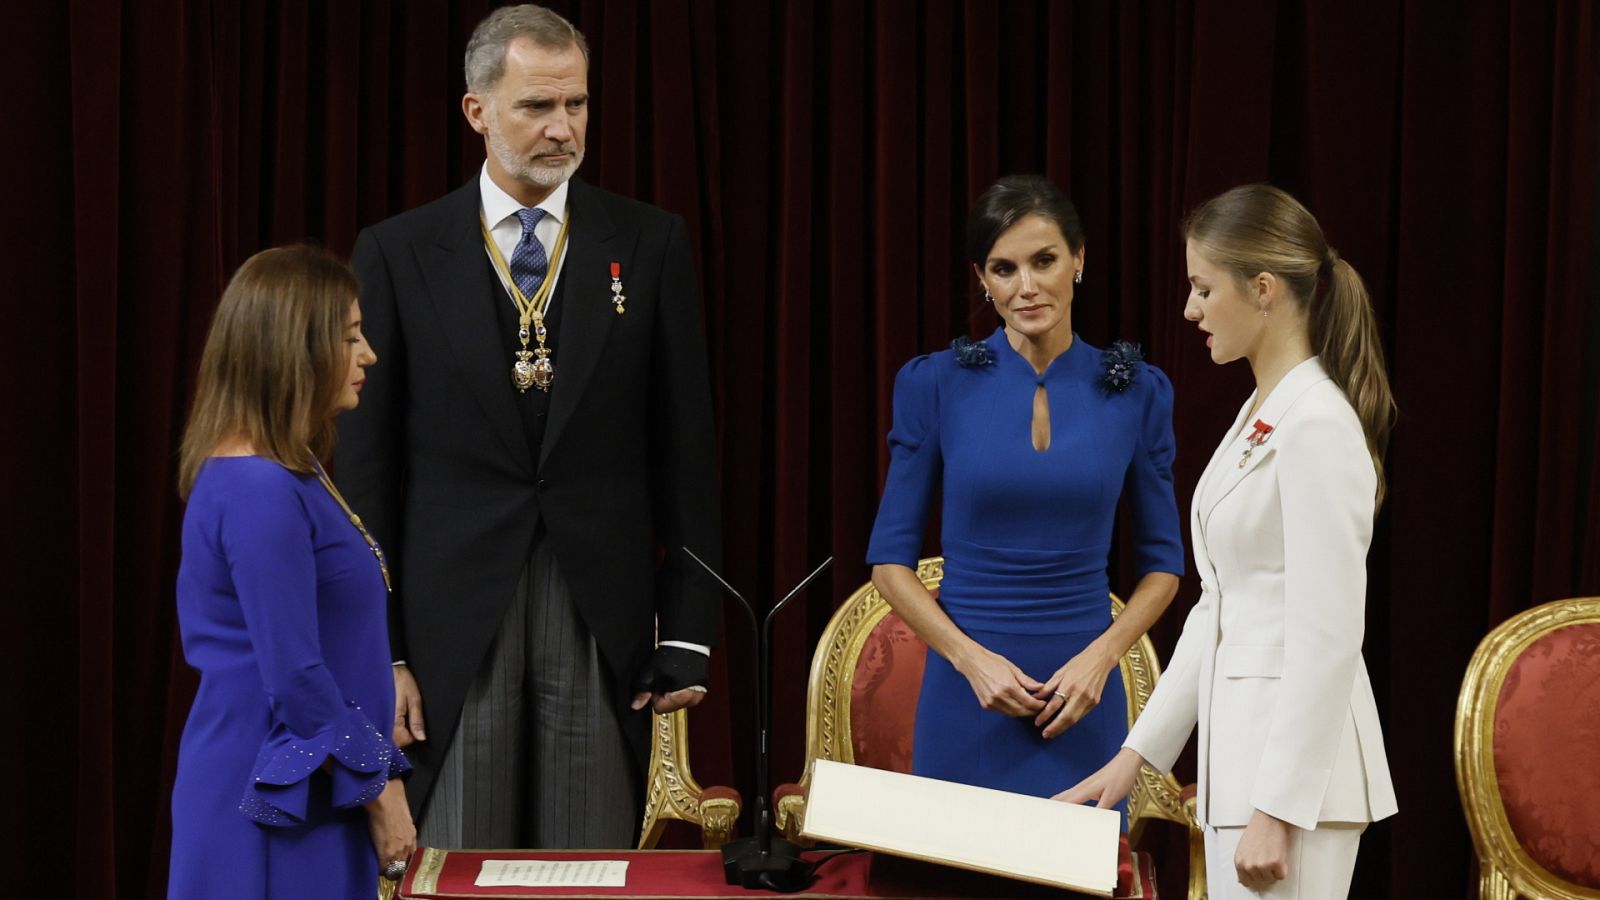 Especial informativo - Jura de la Constitución de S.A.R. la Princesa de Asturias - Lengua de signos